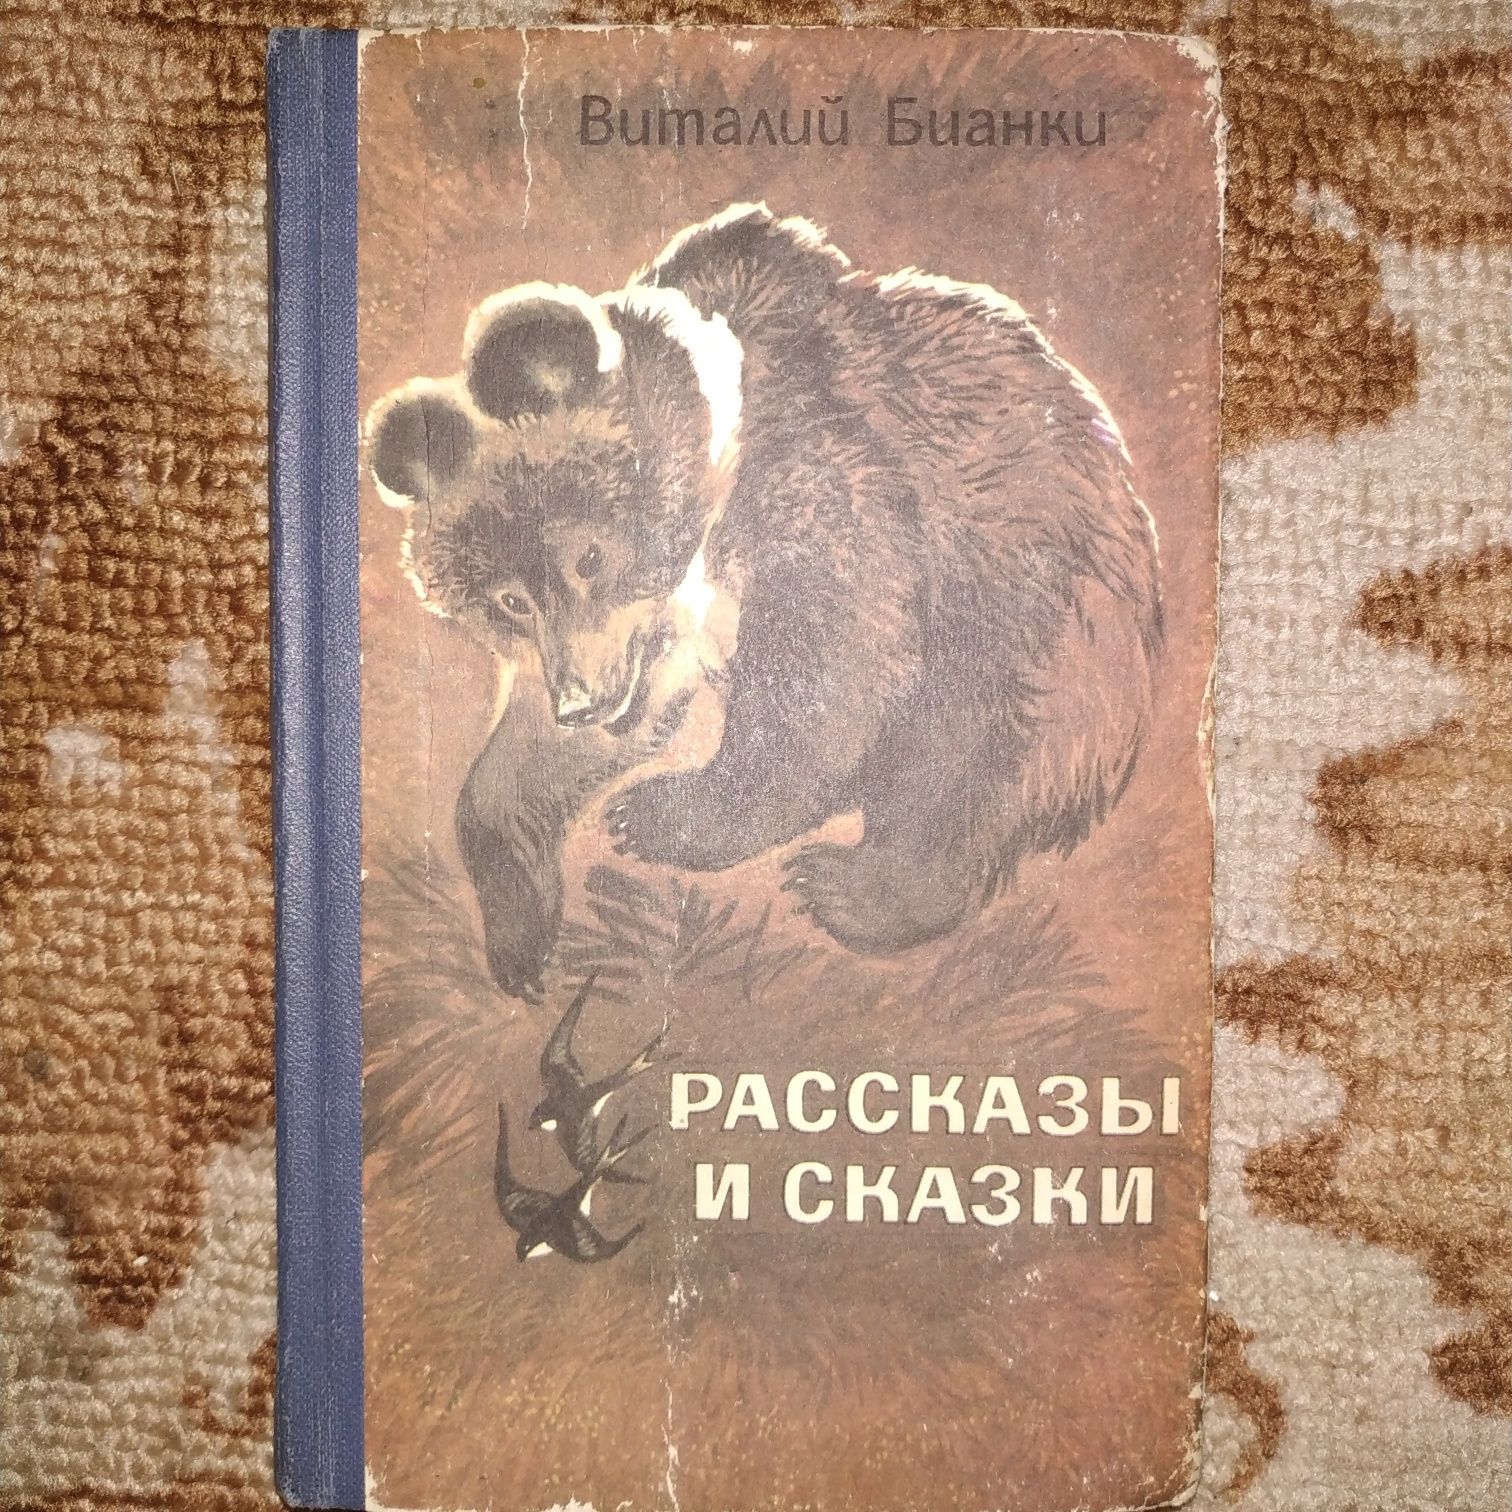 Детская книга Бианки Рассказы и сказки.